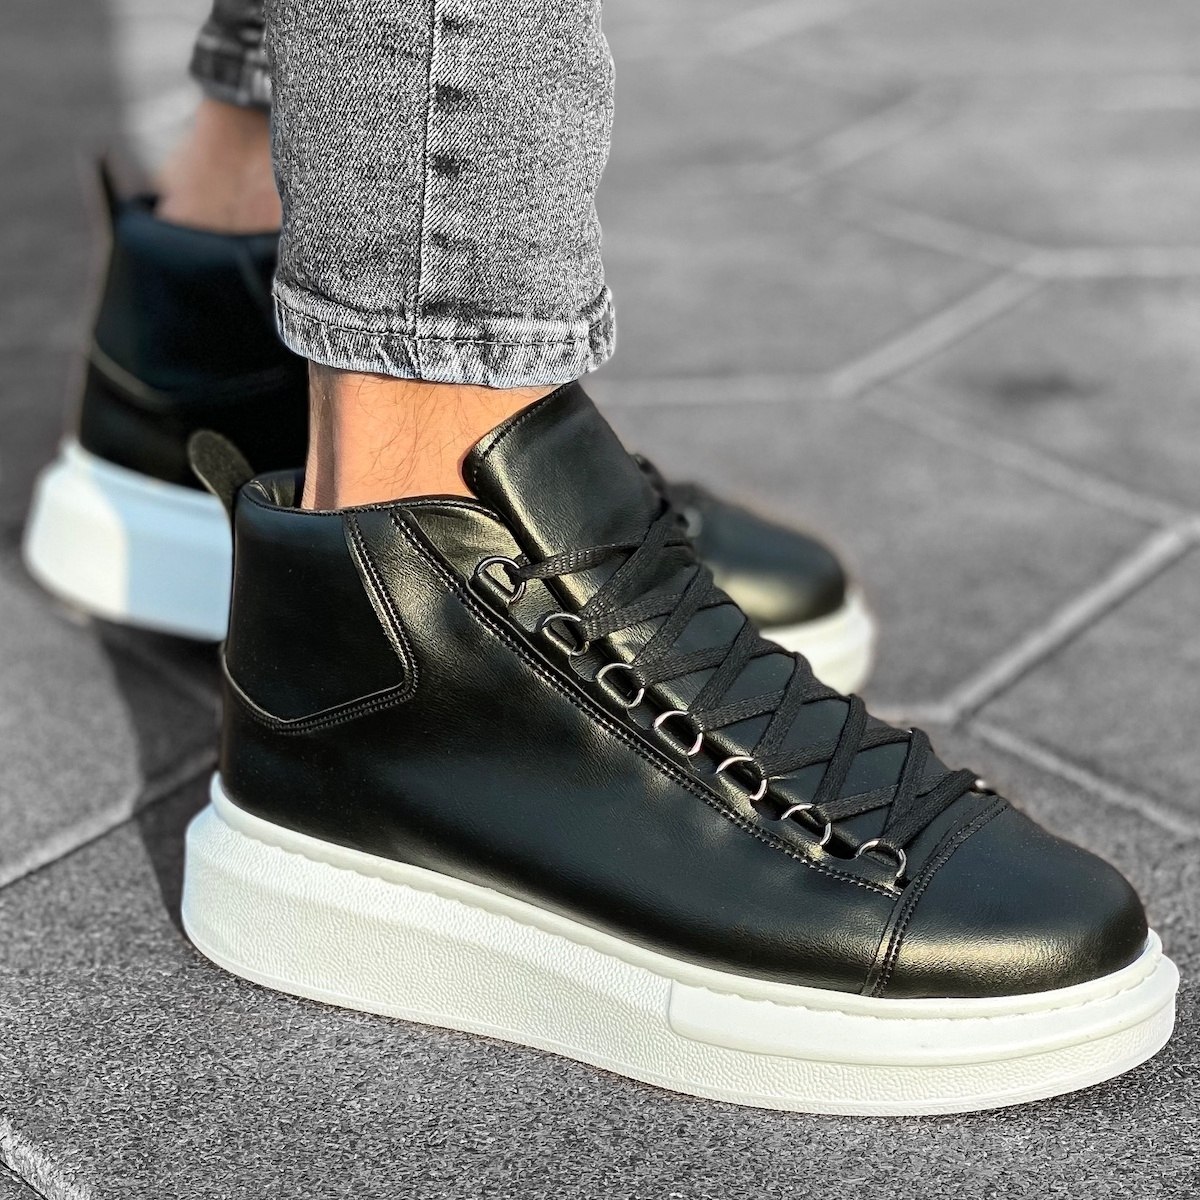 Herren High Top Sneakers Schuhe in schwarz-weiss | Martin Valen